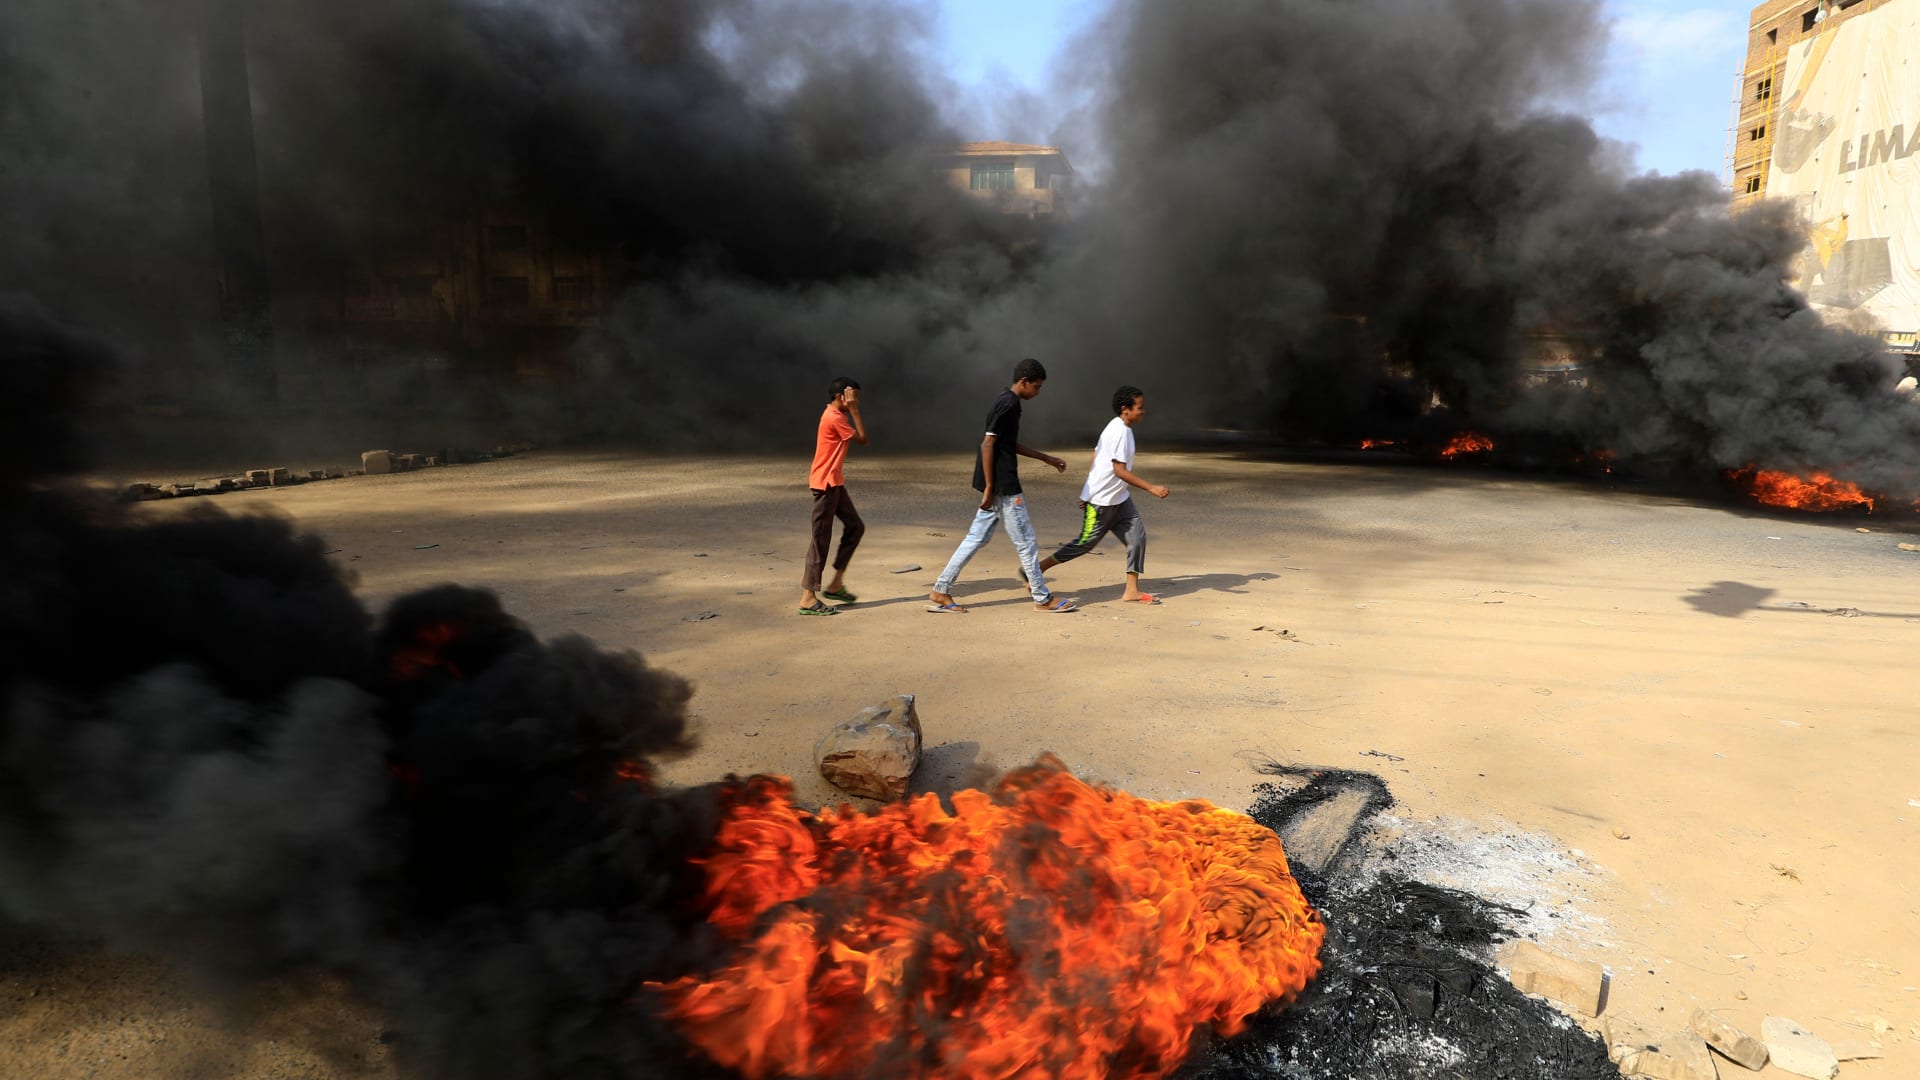 مظاهرات في شوارع الخرطوم بعد محاصرة منزل رئيس الوزراء واعتقال كبار المسؤولين